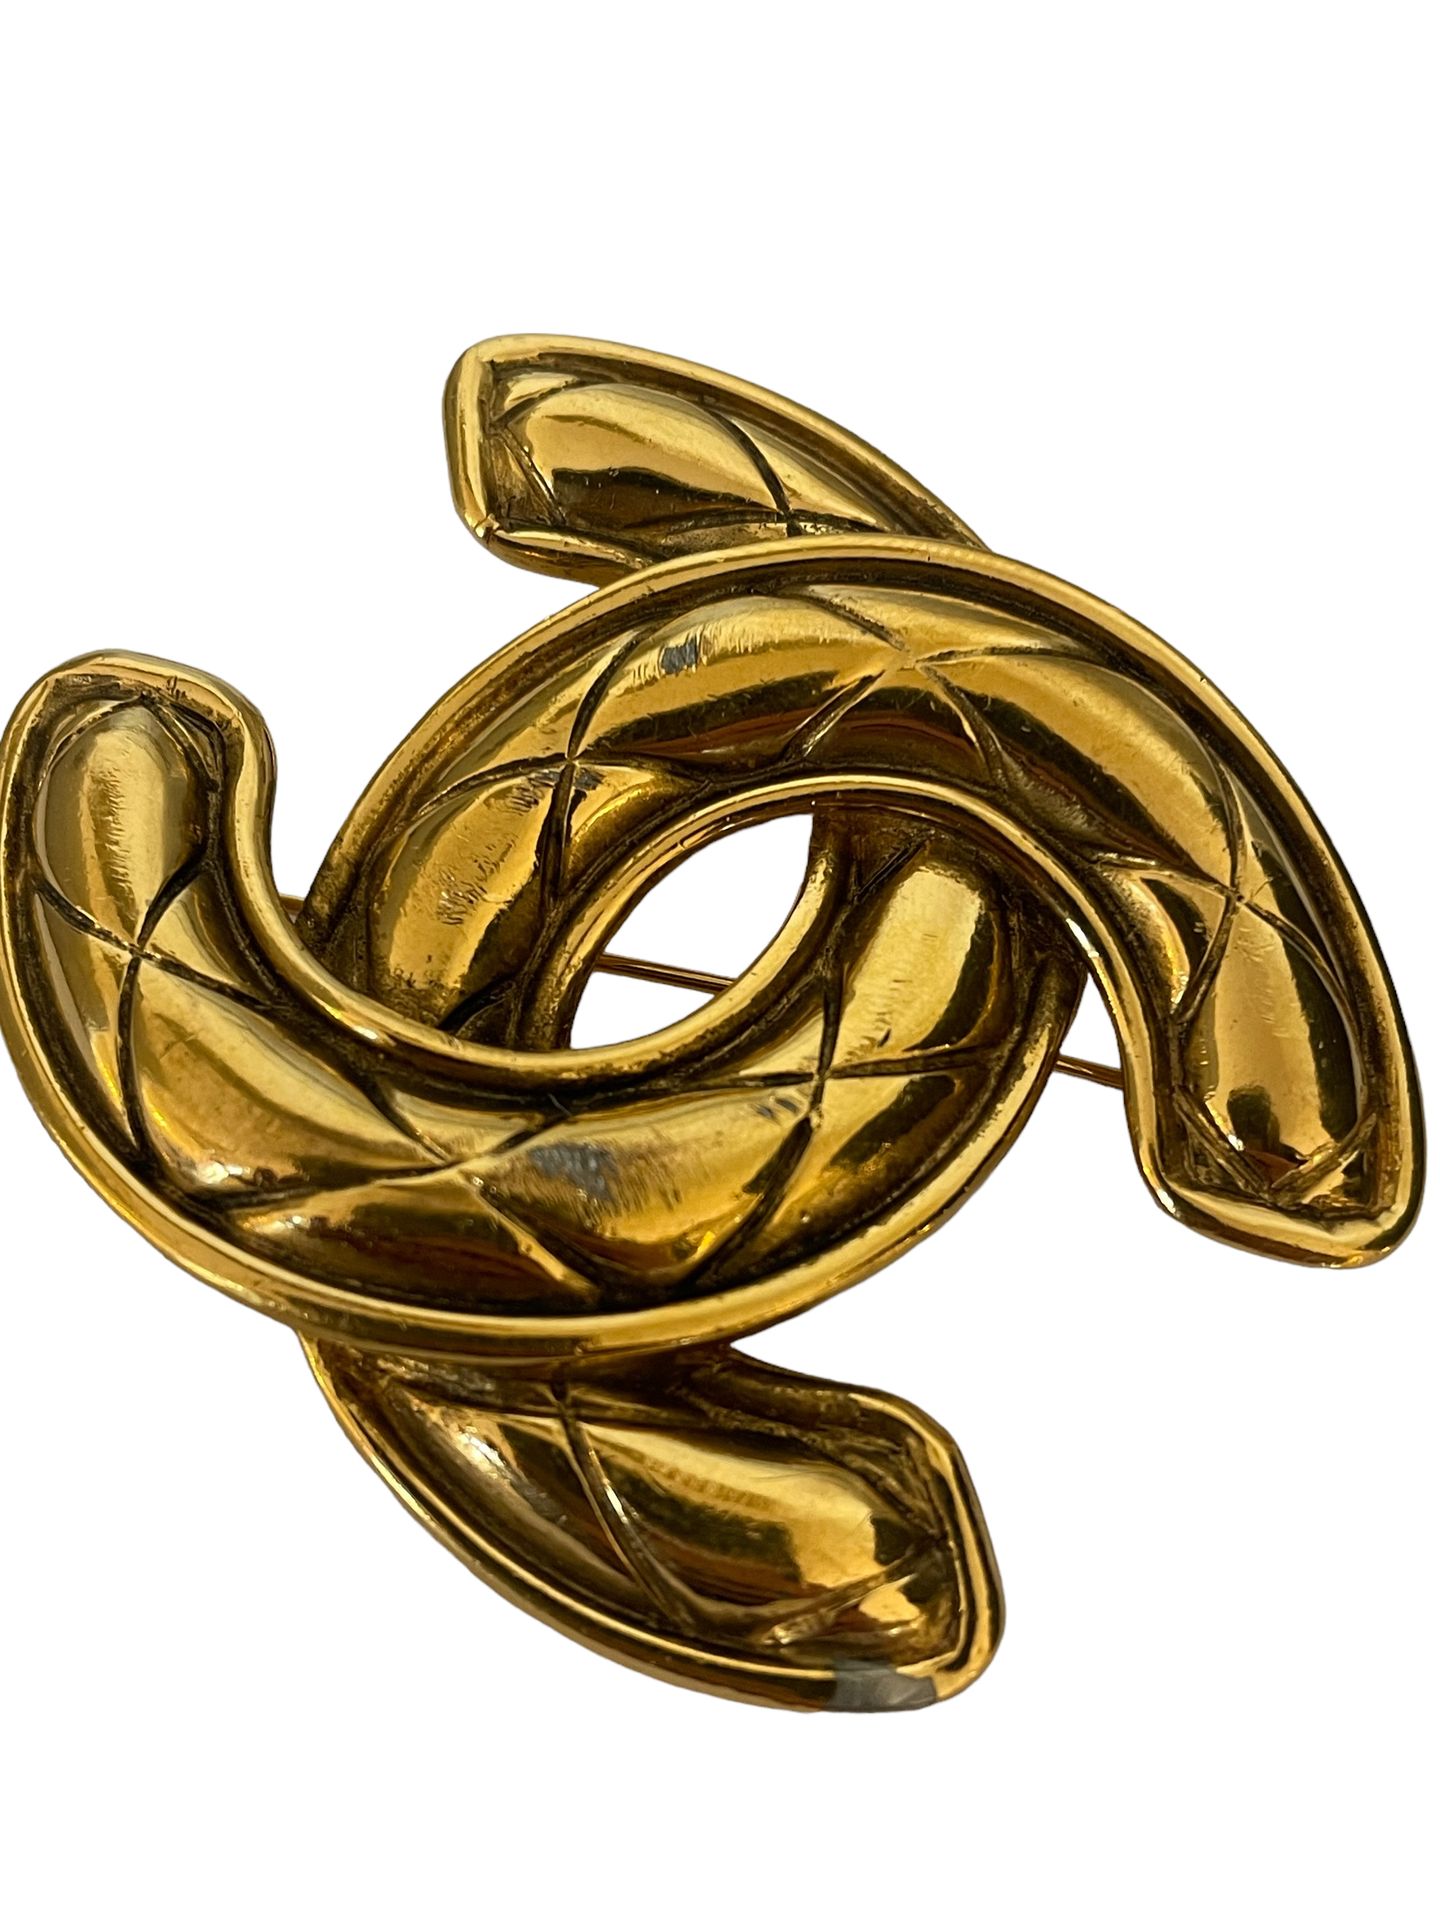 Null CHANEL
Grande broche en métal doré au sigle maison.
5 x 6 cm
(frottements)